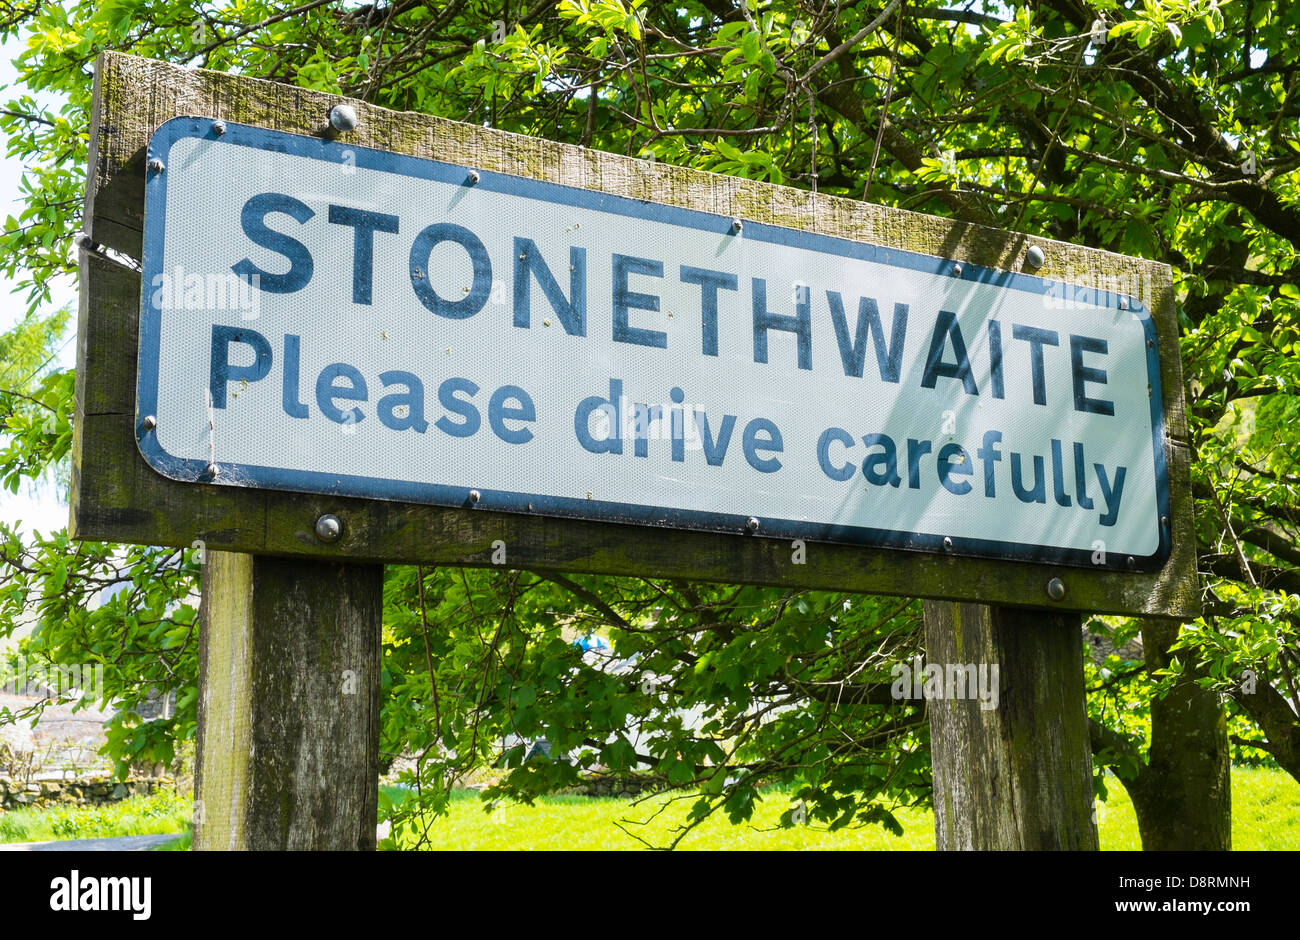 Stonethwaite, Please drive carefully sign. Stock Photo